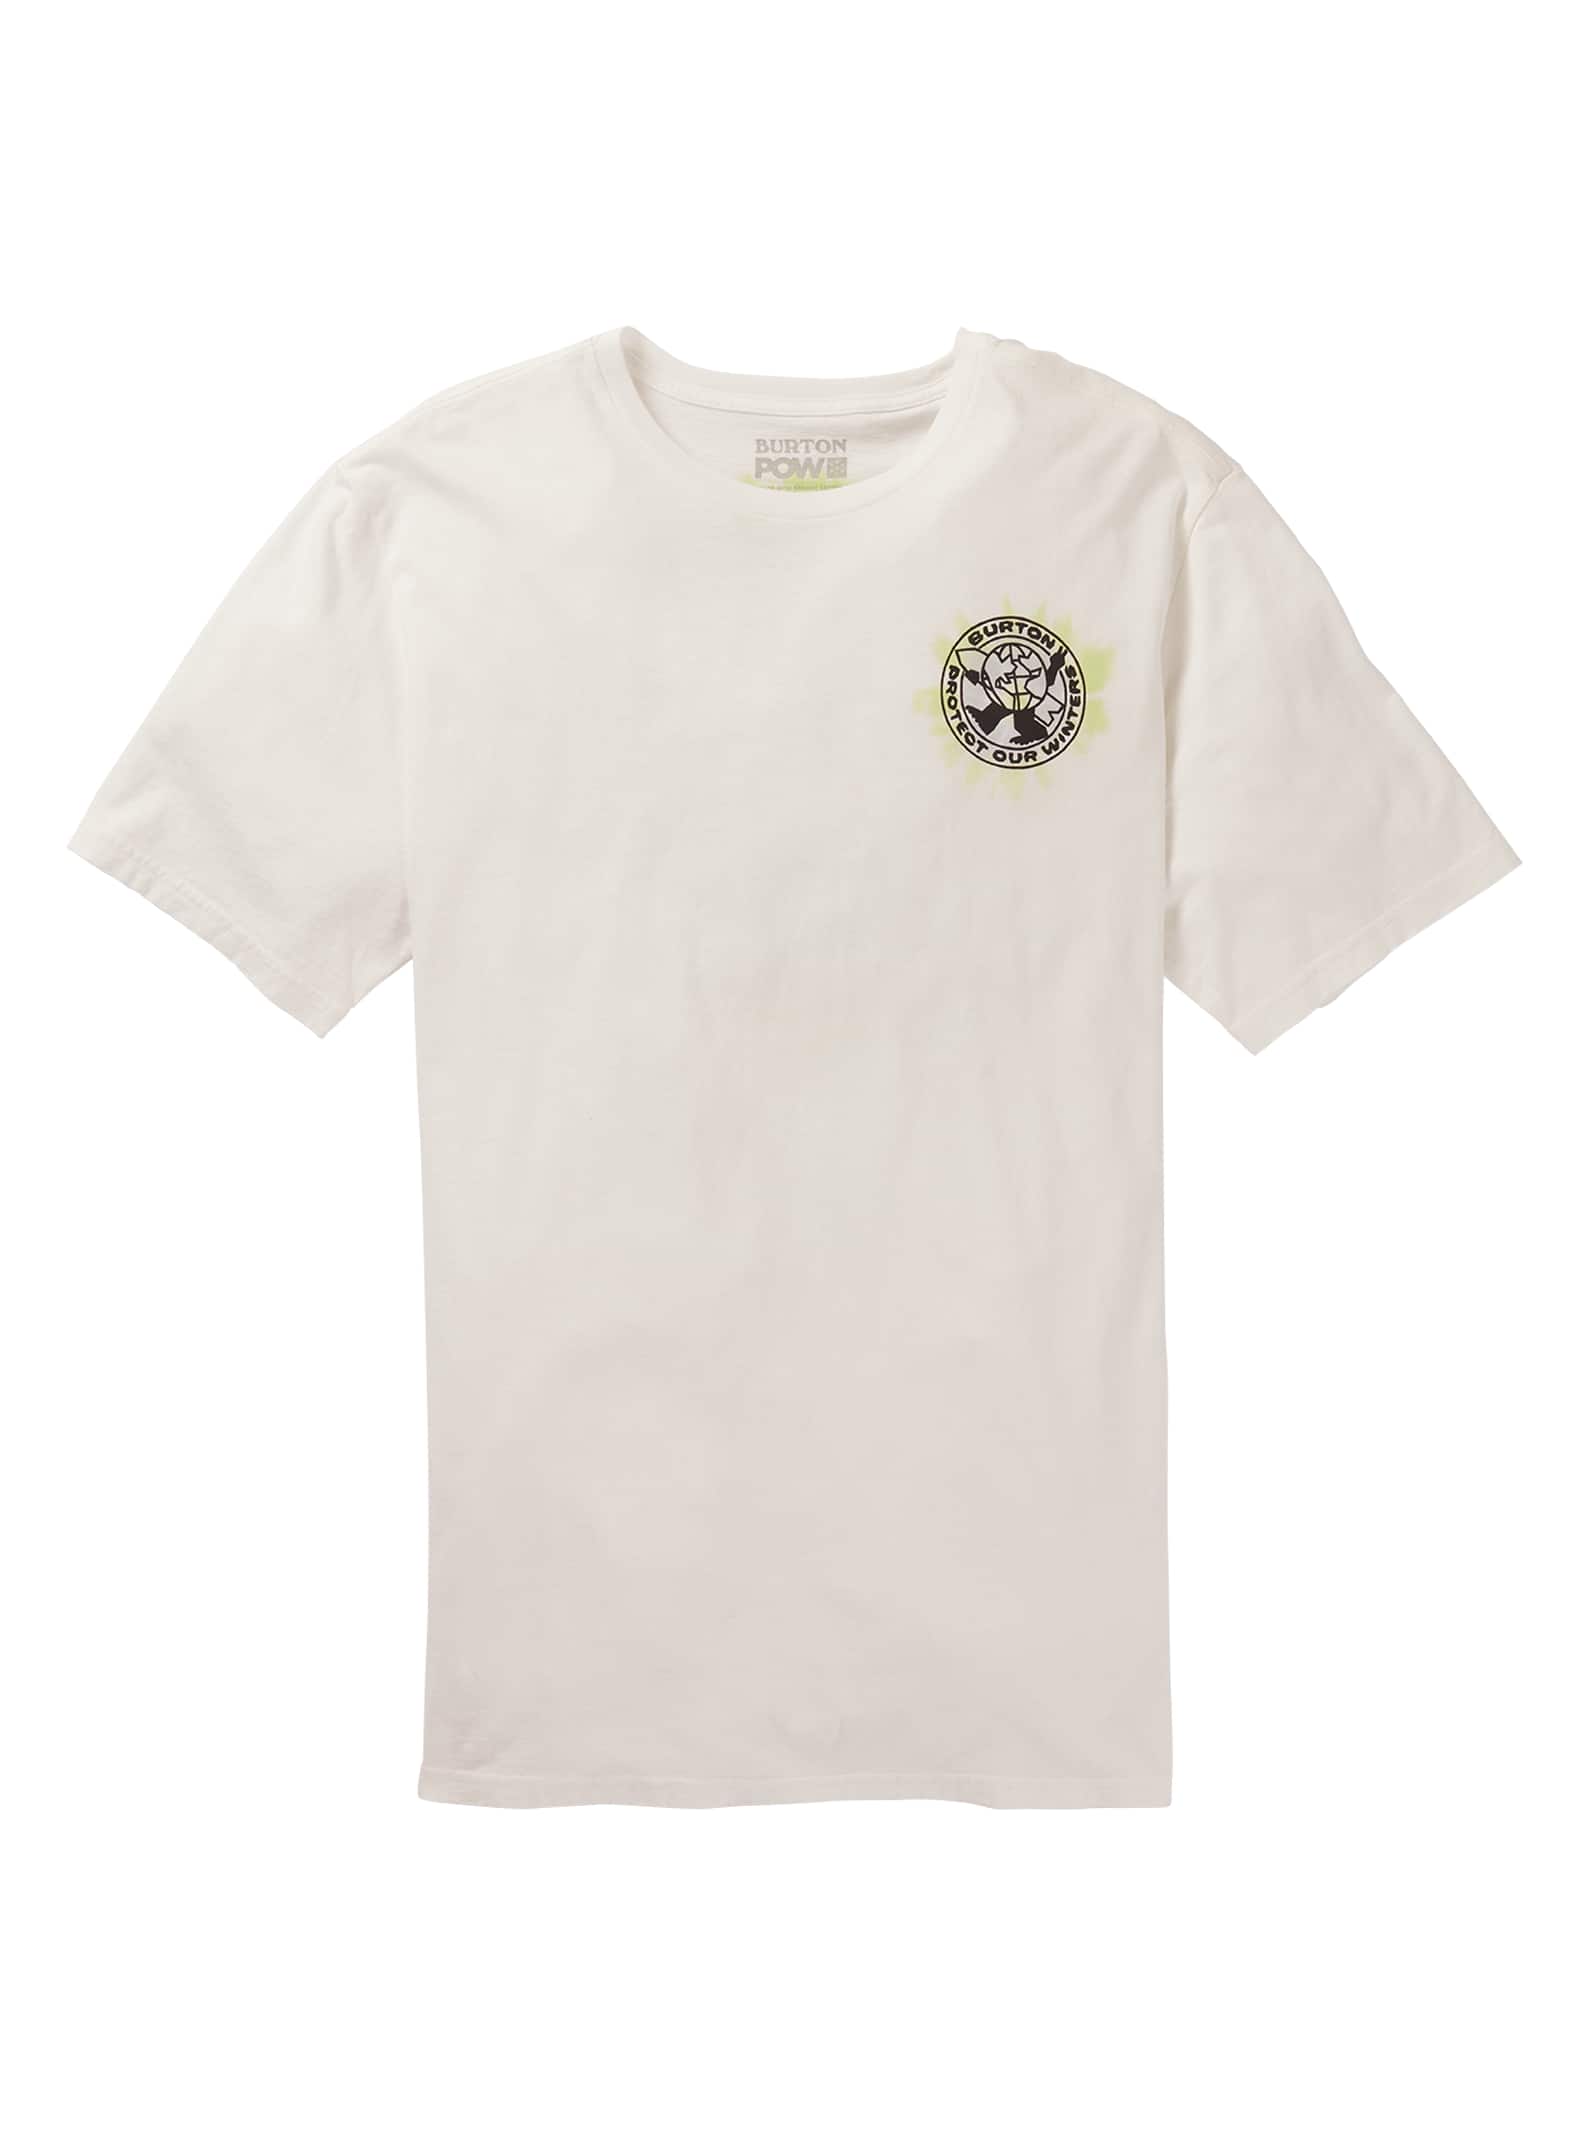 Burton POW Short Sleeve T-Shirt, XS